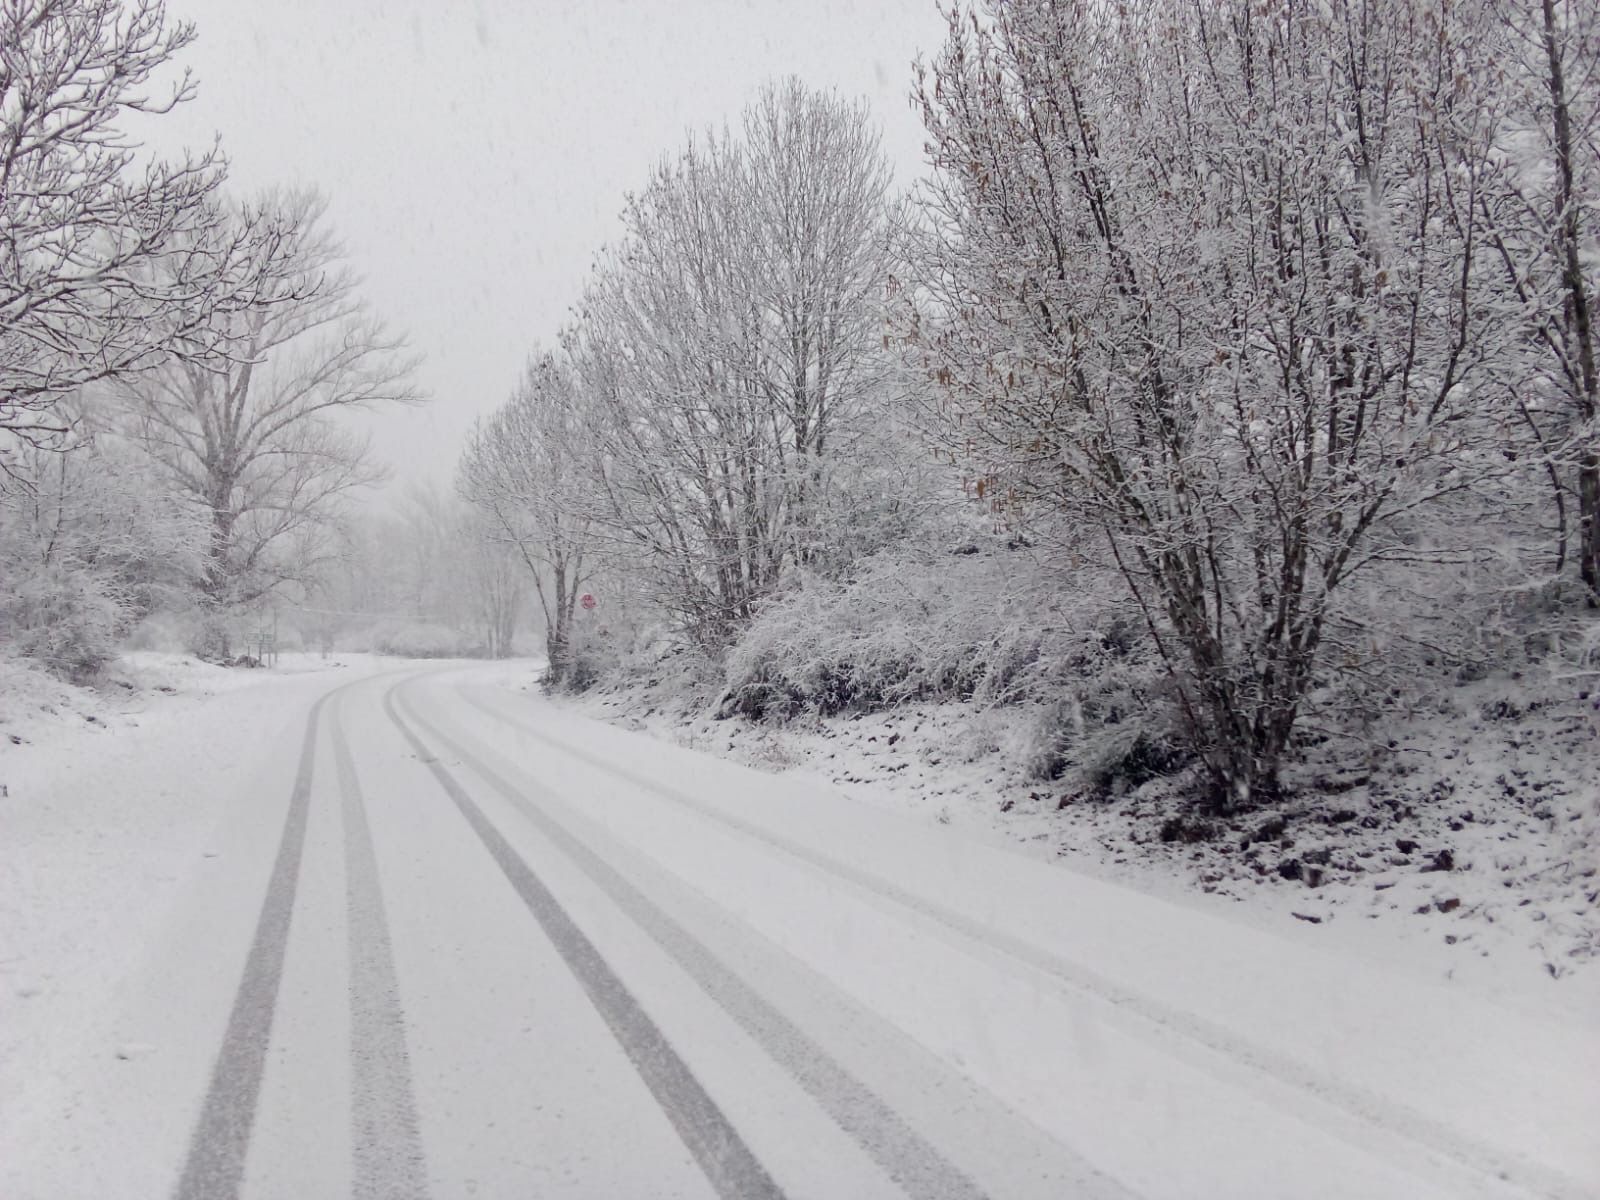 Nieve en la zona de Paradilla de Gordón este lunes. |L.N.C.